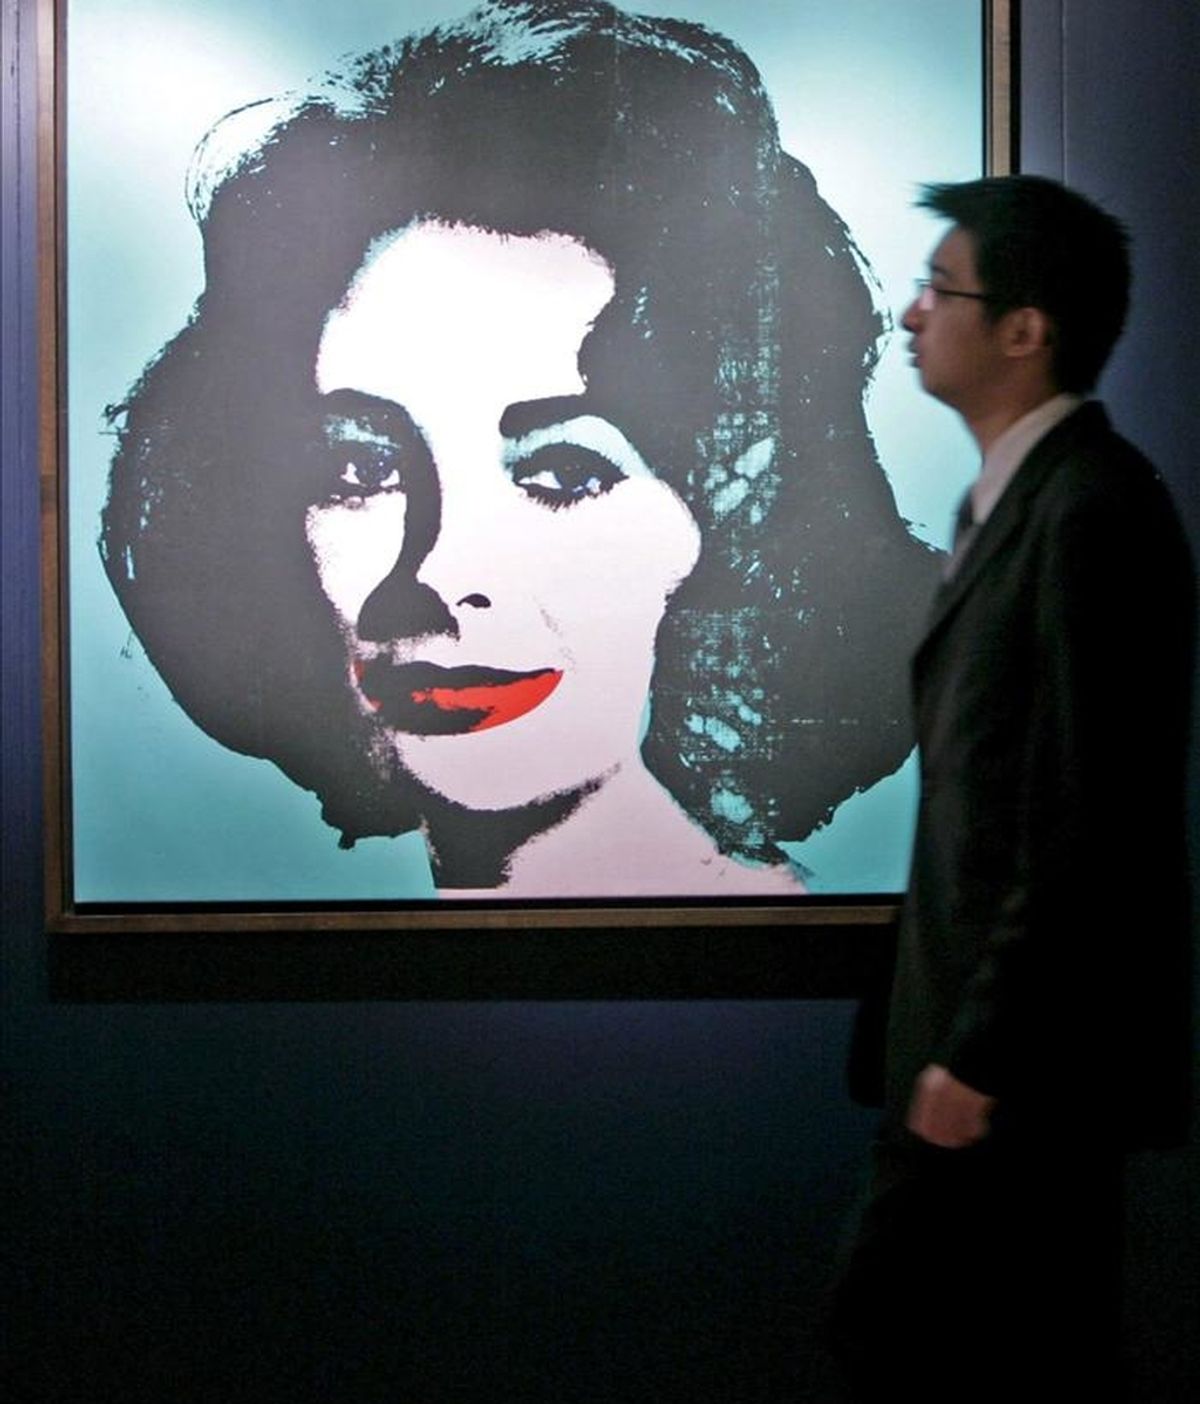 Fotografía de Christie's de a una serigrafía de Andy Warhol de 1963 titulada "Liz" de la actriz Elizabeth Taylor, fallecida recientemente. EFE/Archivo